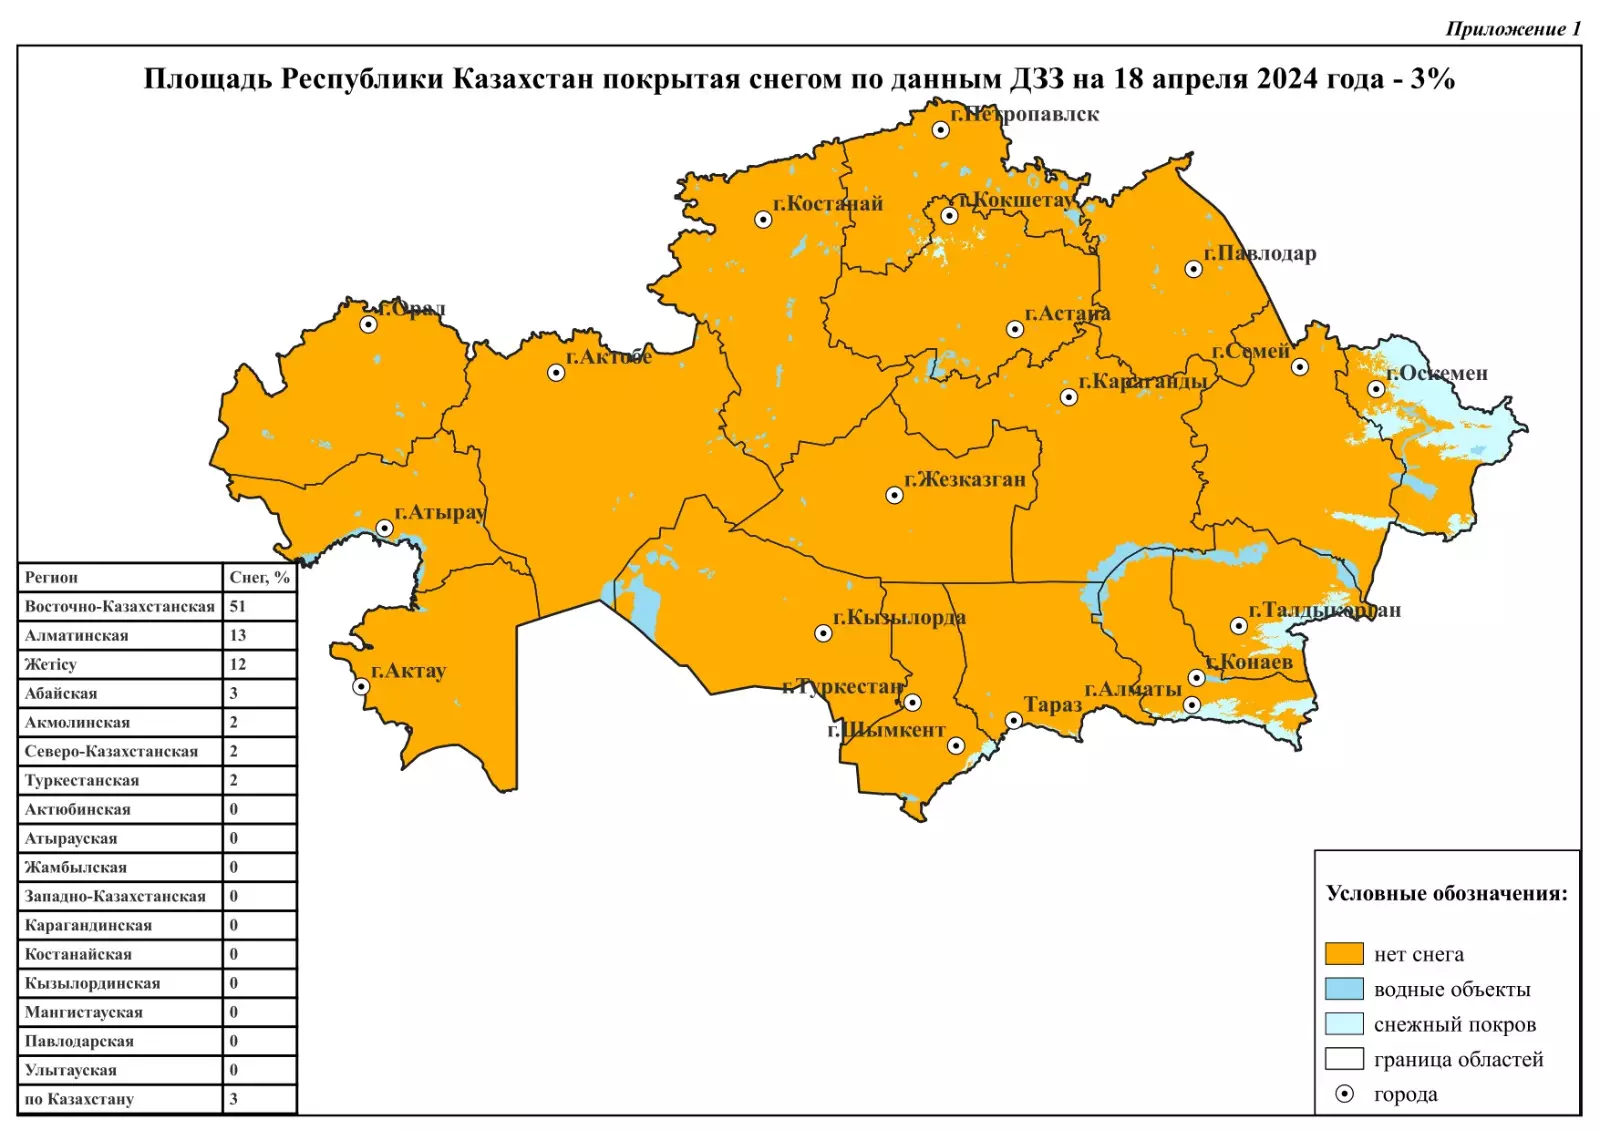 Еще 3% территории Казахстана покрыто снегом